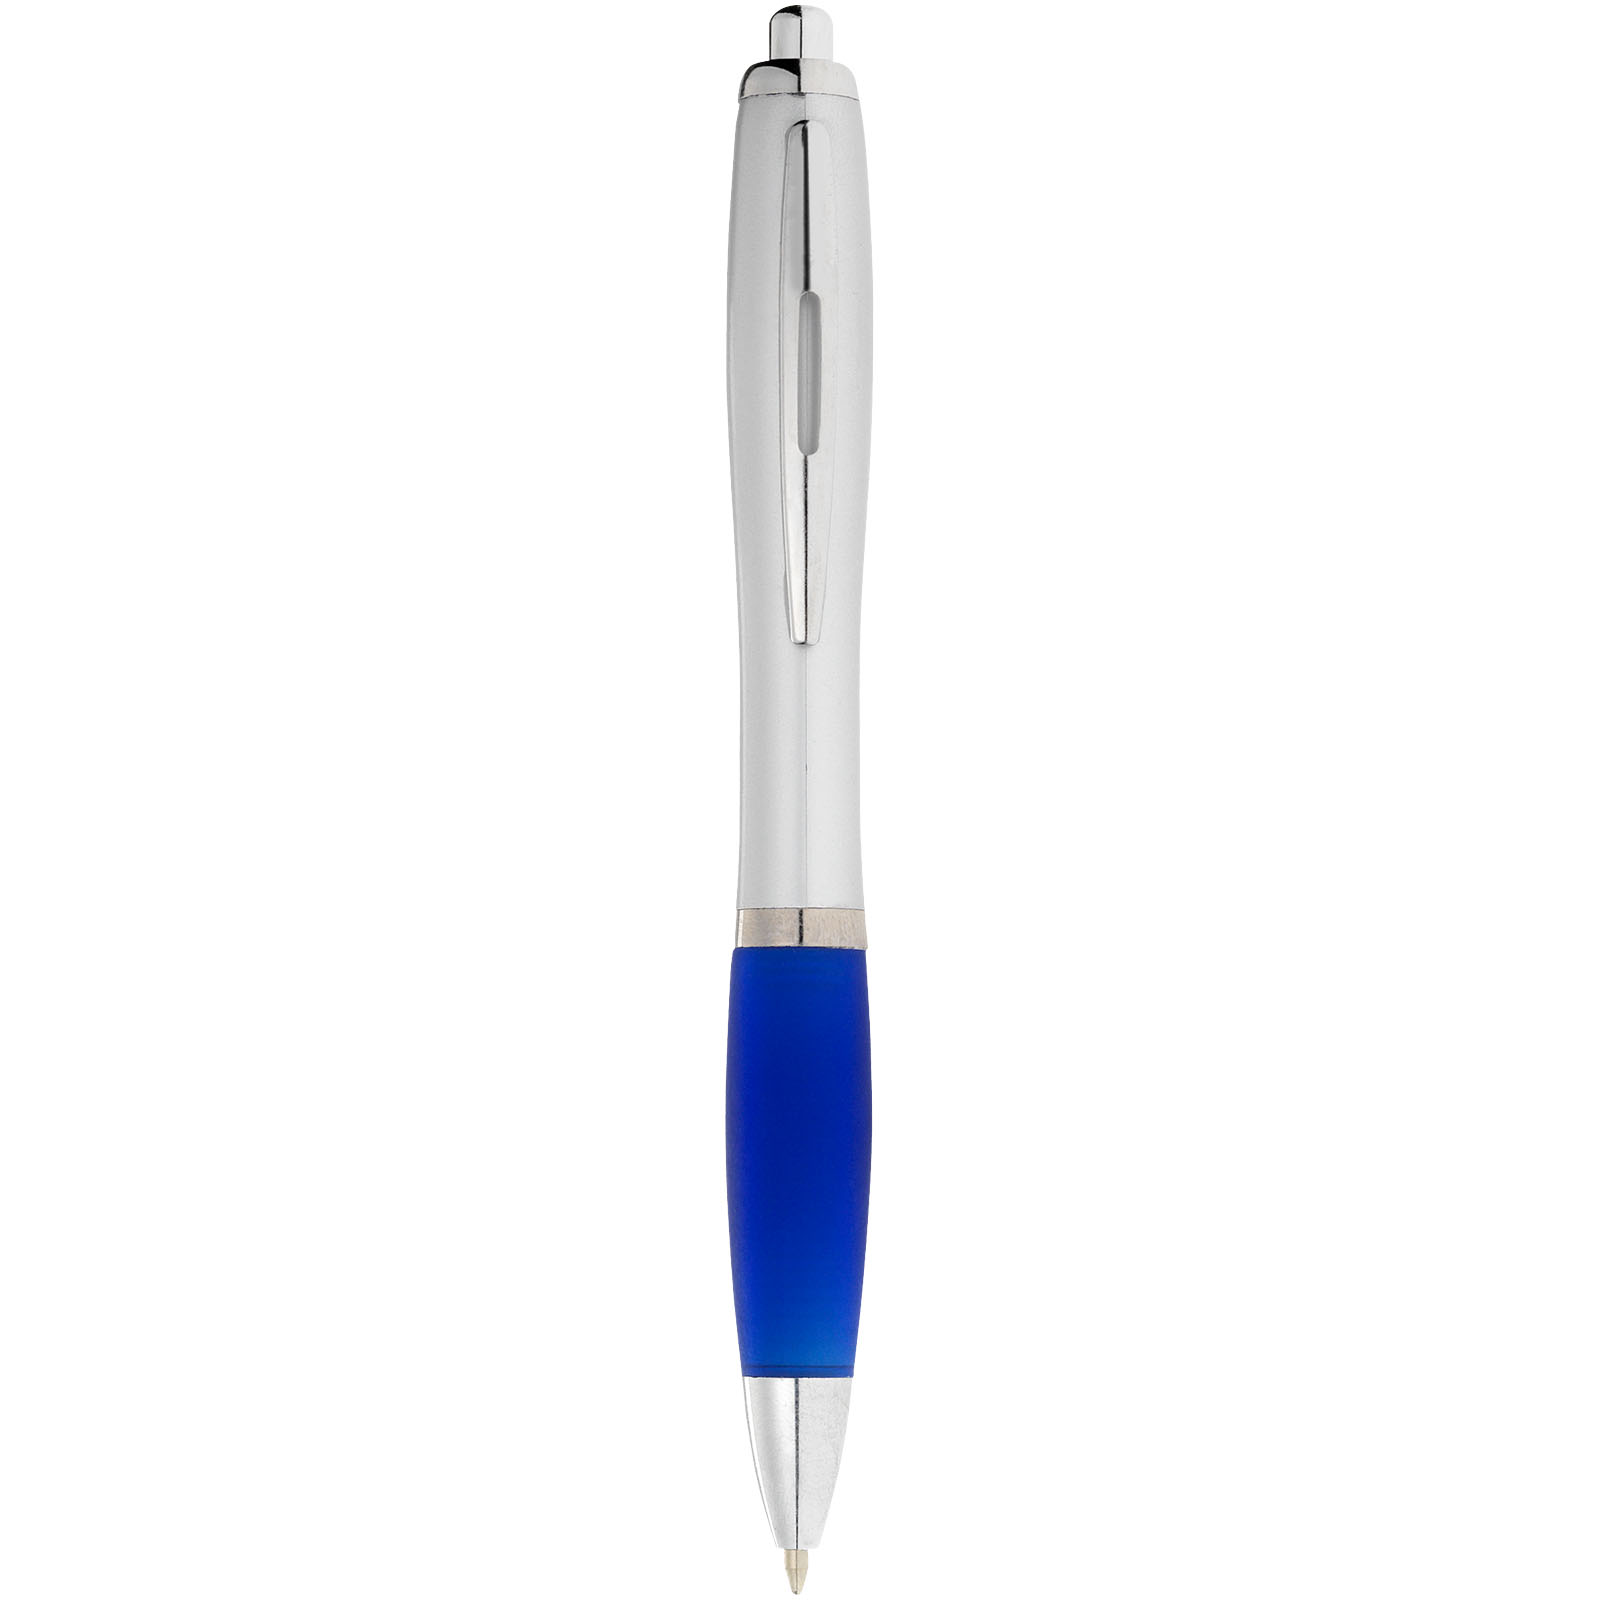 Advertising Ballpoint Pens - Nash ballpoint pen silver barrel and coloured grip - 1